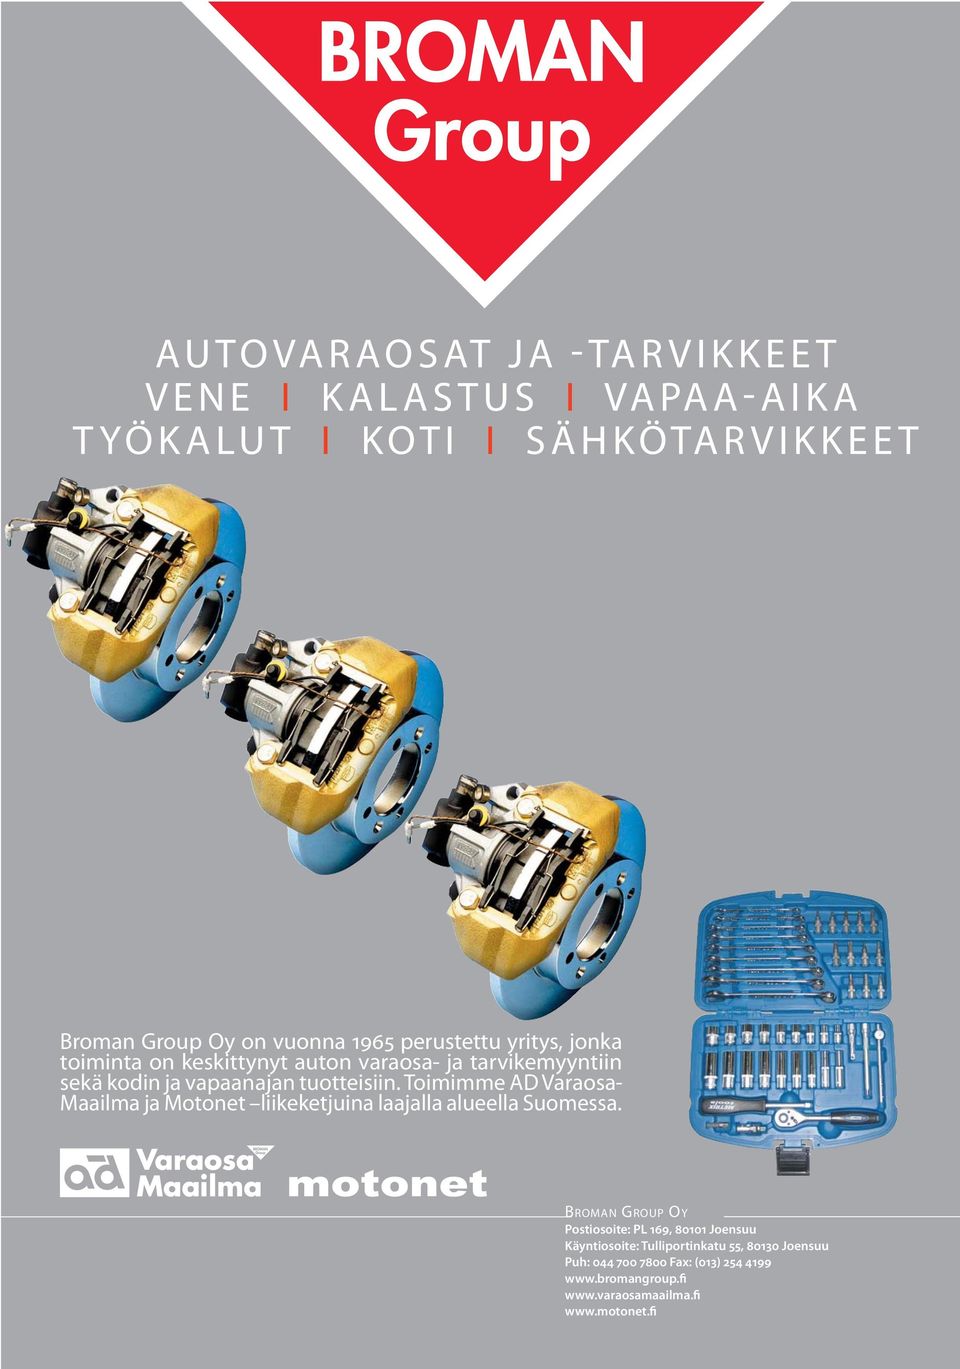 Toimimme AD Varaosa- Maailma ja Motonet liikeketjuina laajalla alueella Suomessa.